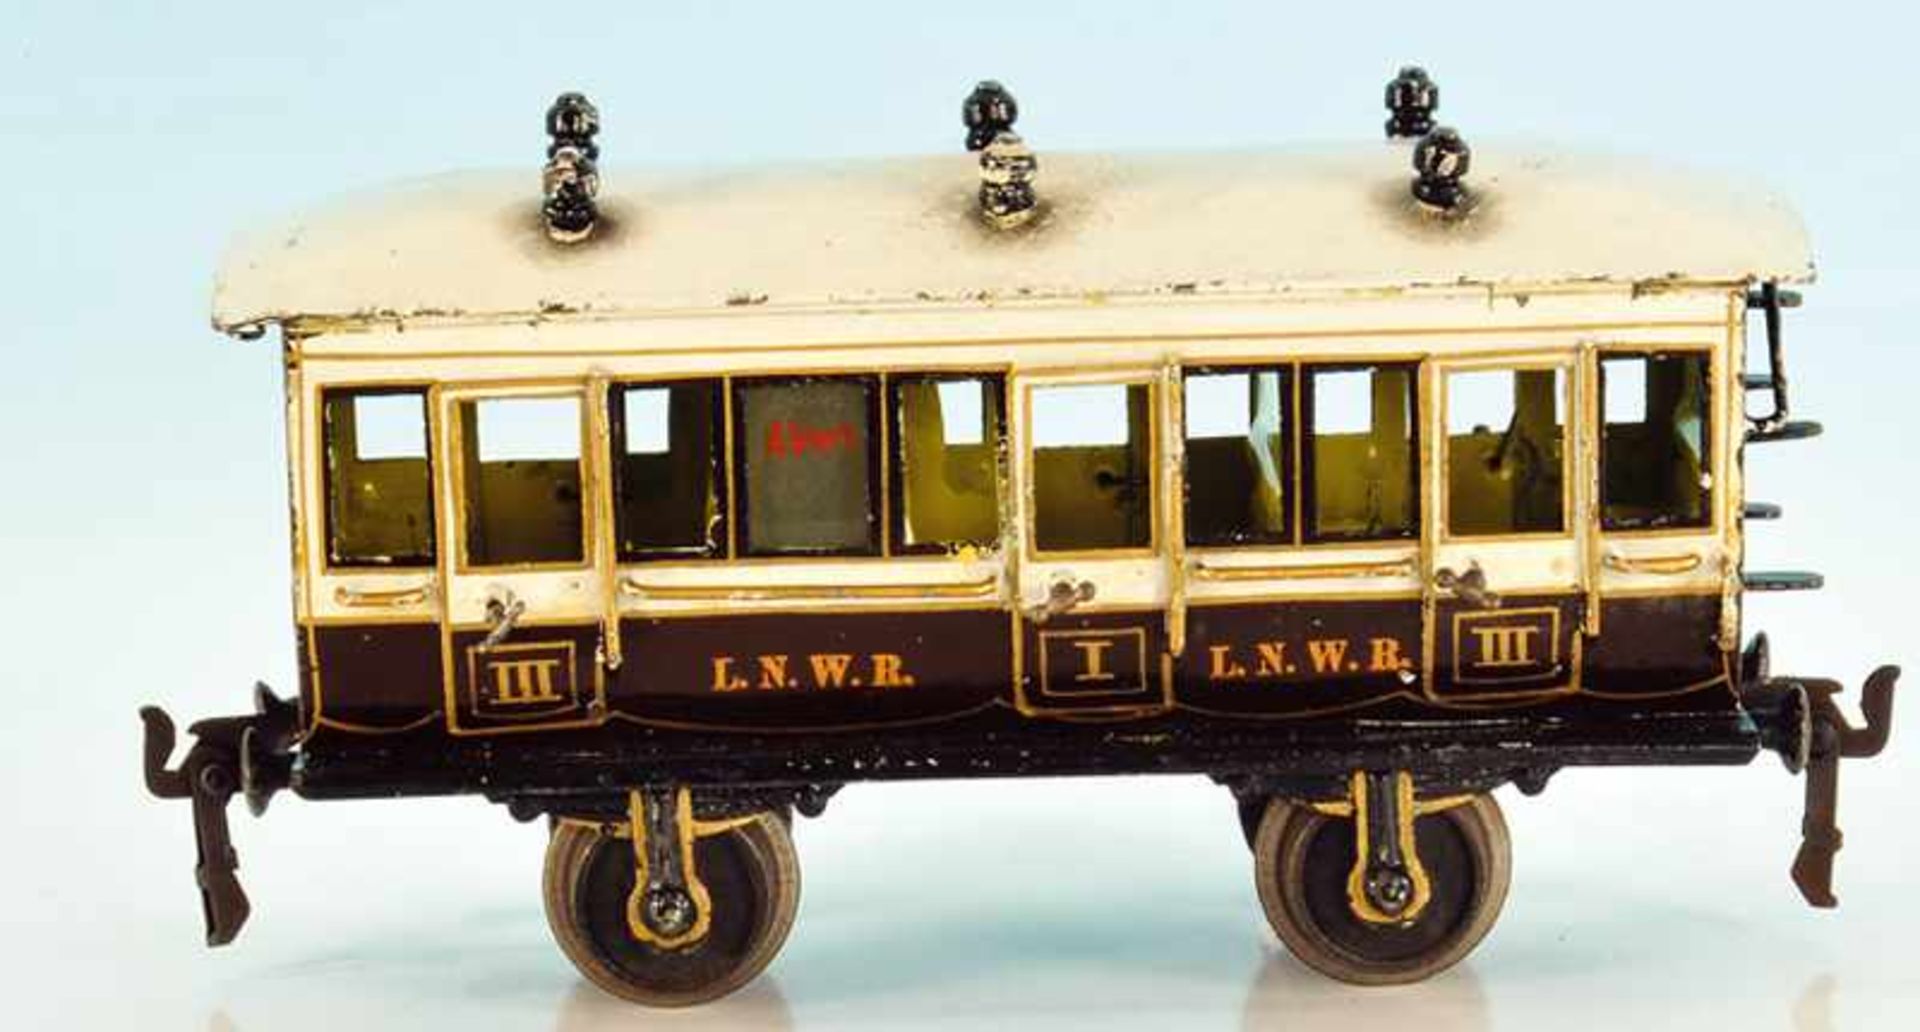 MÄRKLIN engl. Personenwagen 1856/1 L.N.W.R 22 cm, braun/weiß handlackiert, mit Inneneinrichtung,